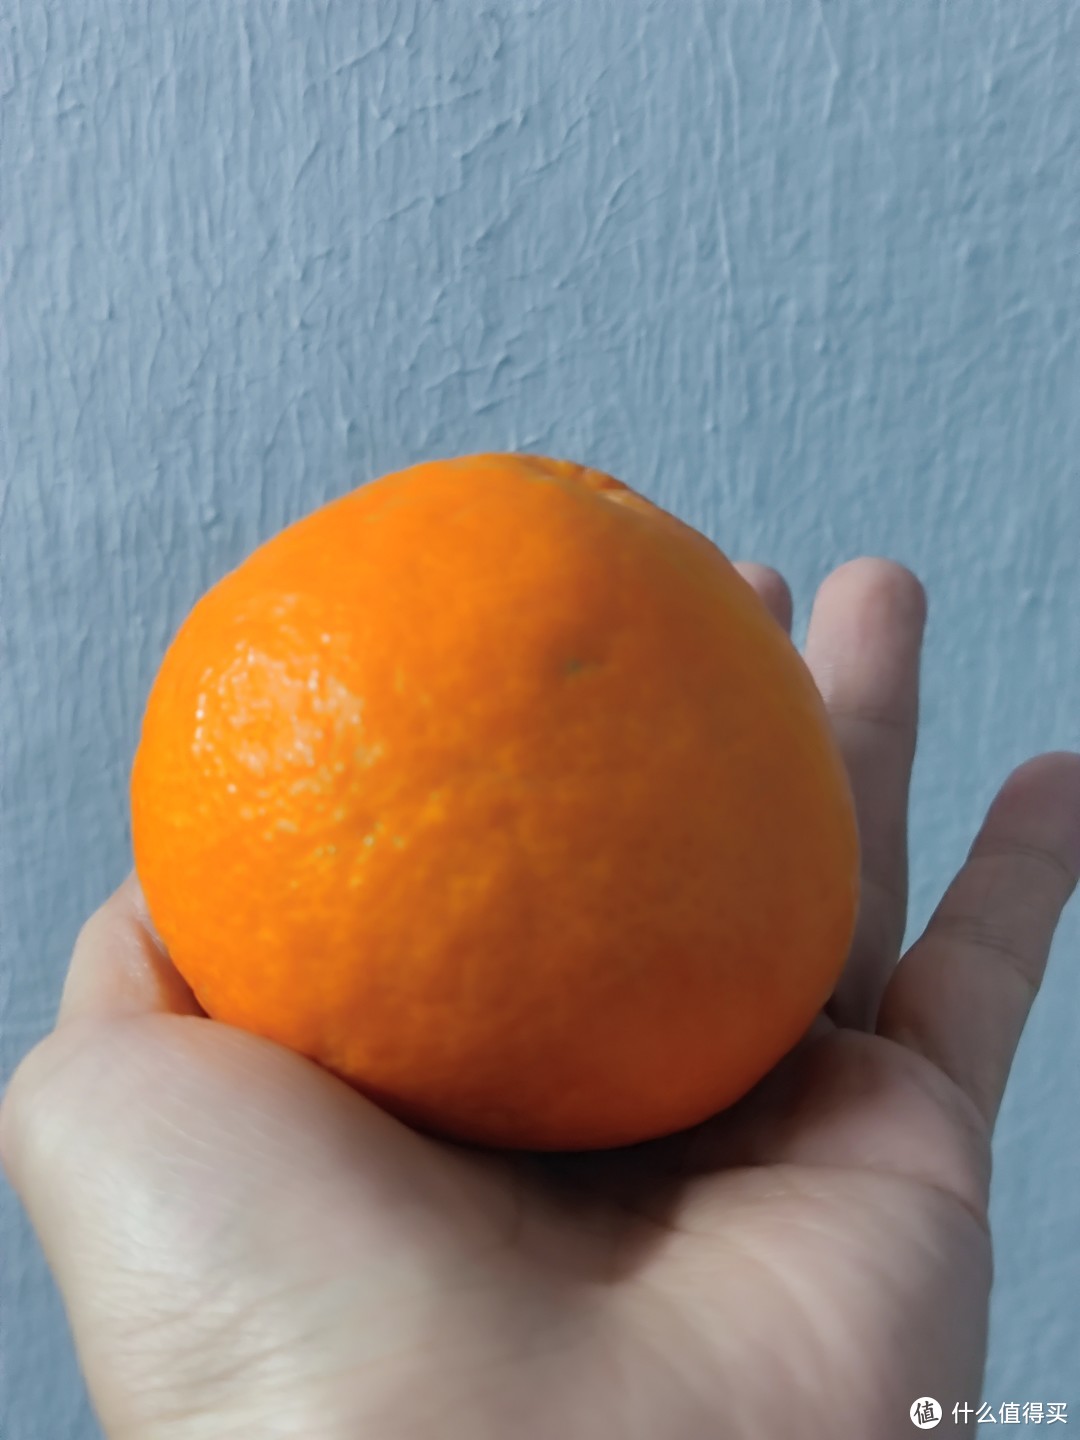 果冻橙真是最好吃的橙子。